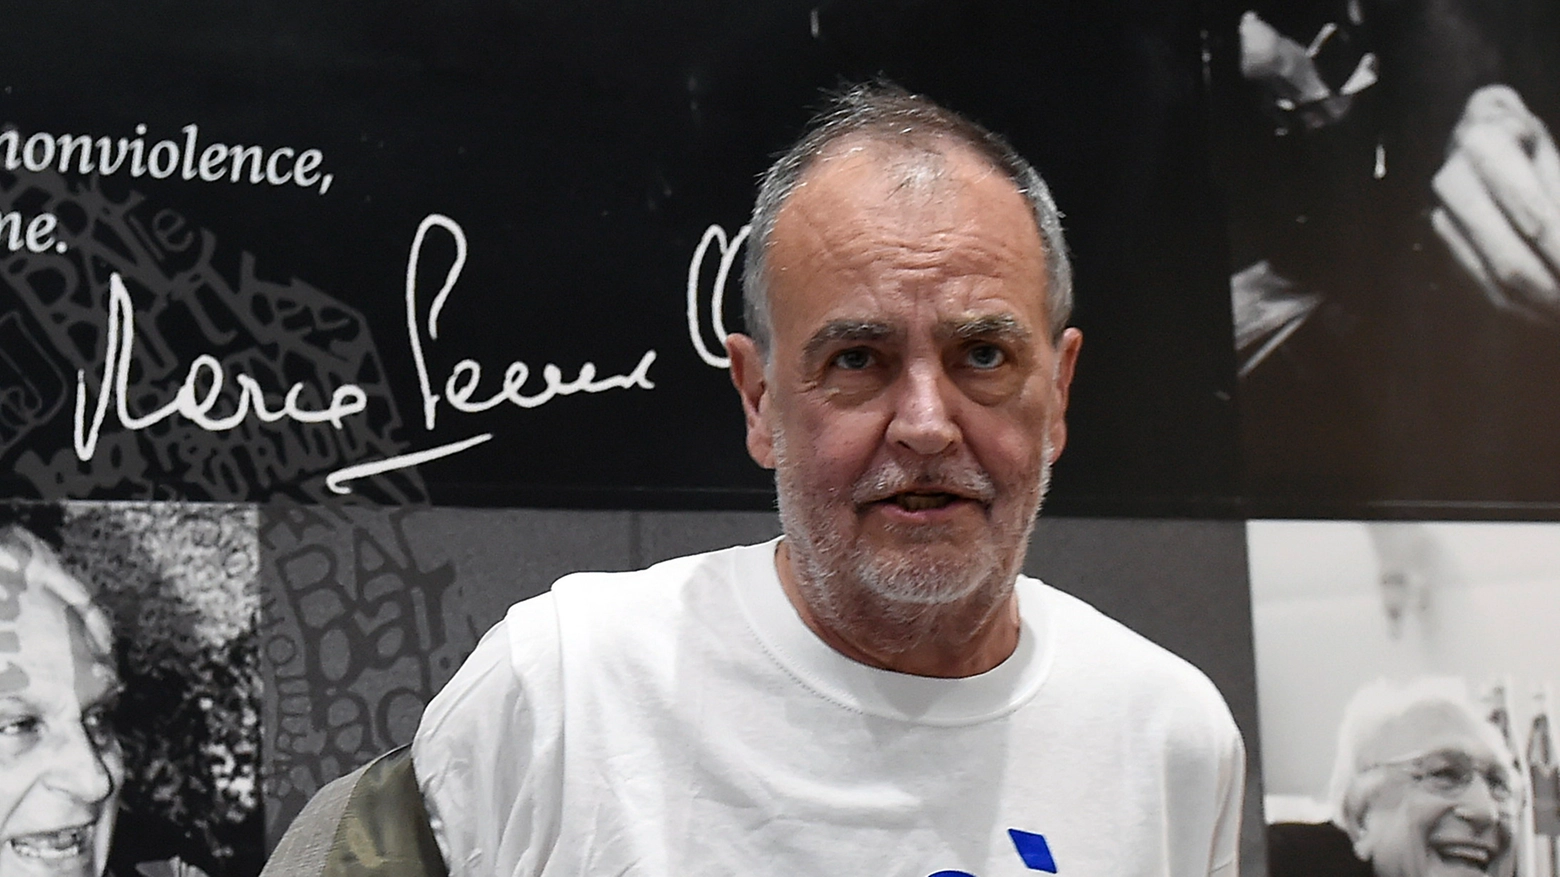 Roberto Calderoli (66 anni) torna alla t-shirt politica: "Dà un messaggio immediato"